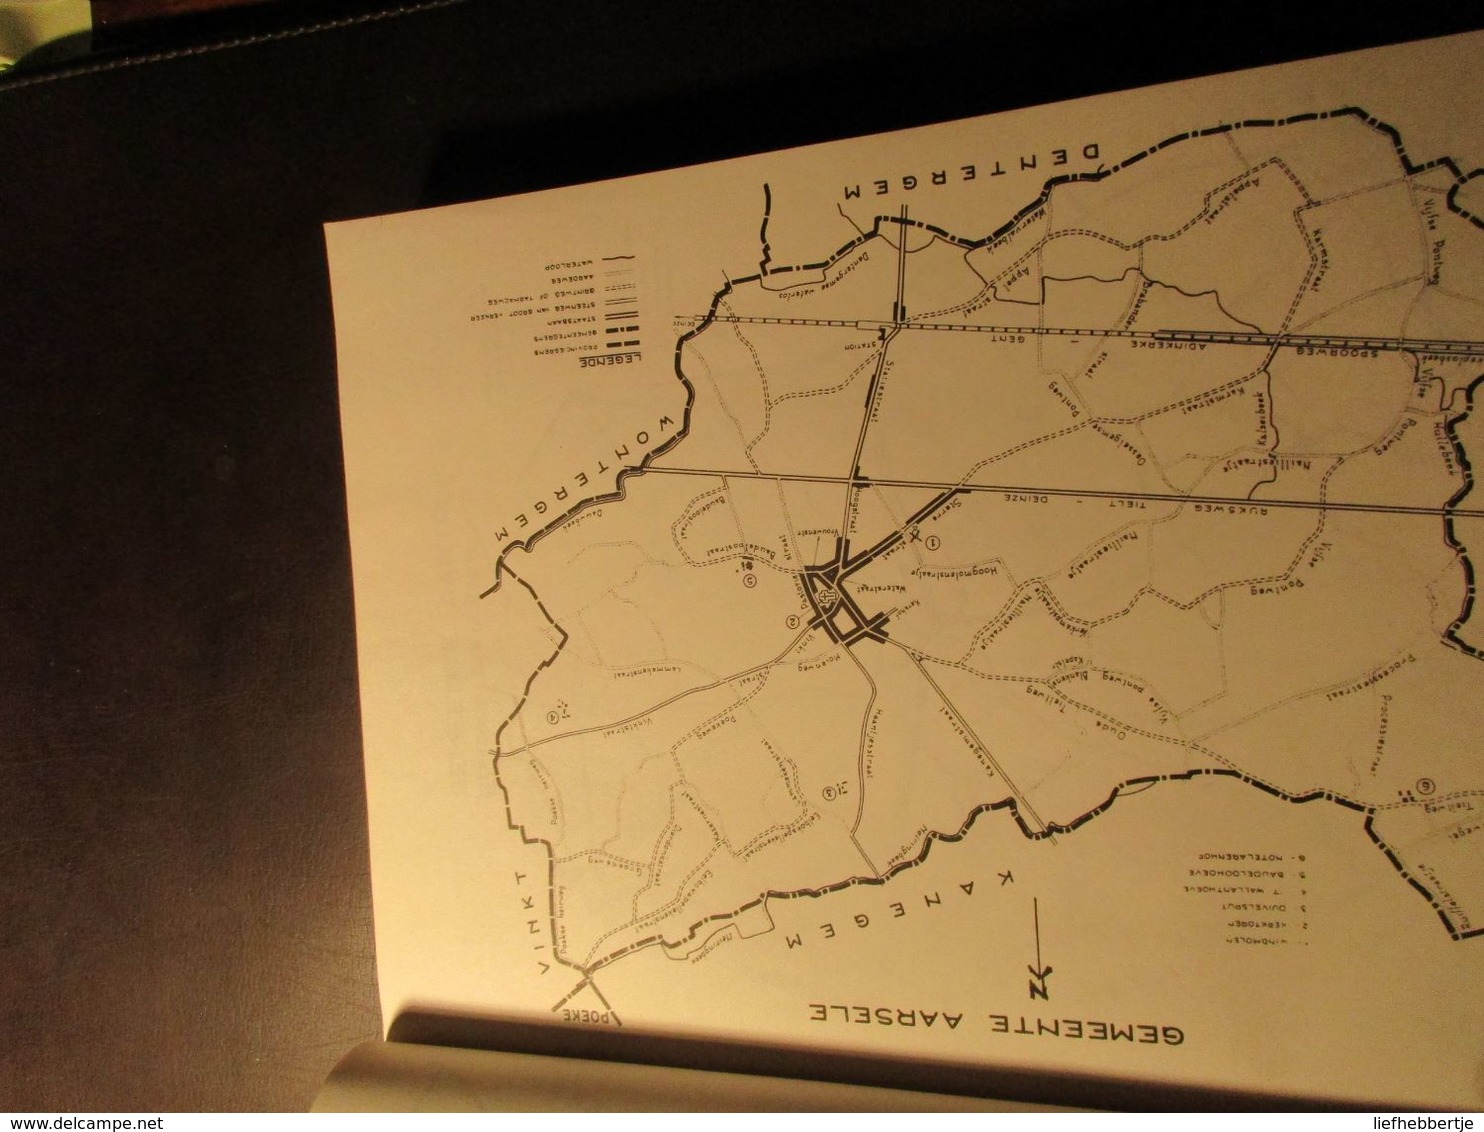 Atlas van alle Westvlaamse gemeenten van rond 1960  -  West-vlaanderen - oude kaarten - Zedelgem (auteur uit_)